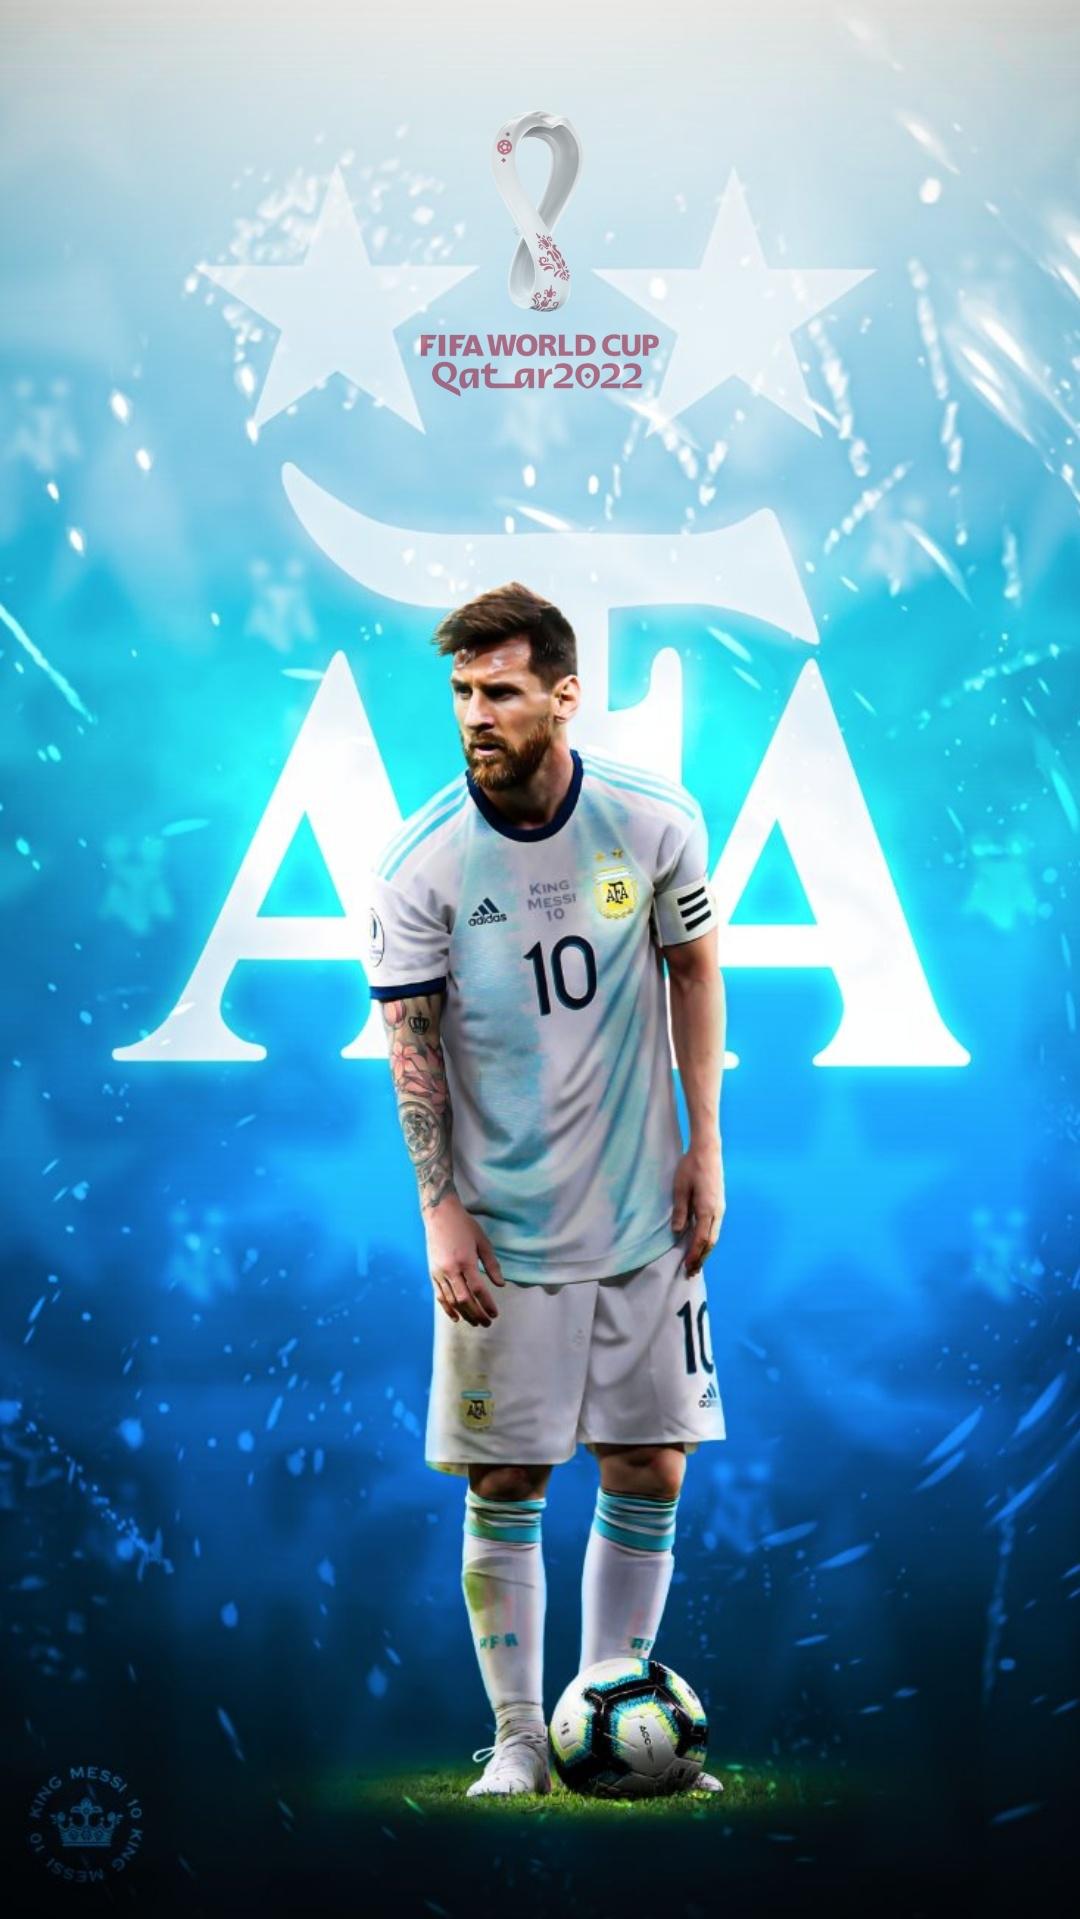 Với tất cả các fan Messi trên thế giới, đây là cơ hội để sở hữu những bức ảnh nền điện thoại Messi World Cup chất lượng cao. Các tấm hình này không chỉ đẹp mắt mà còn thể hiện sự tài năng của cầu thủ đầy tài năng này. Hãy tải về và thưởng thức những hình ảnh này mà không một fan Messi nào nên bỏ qua.